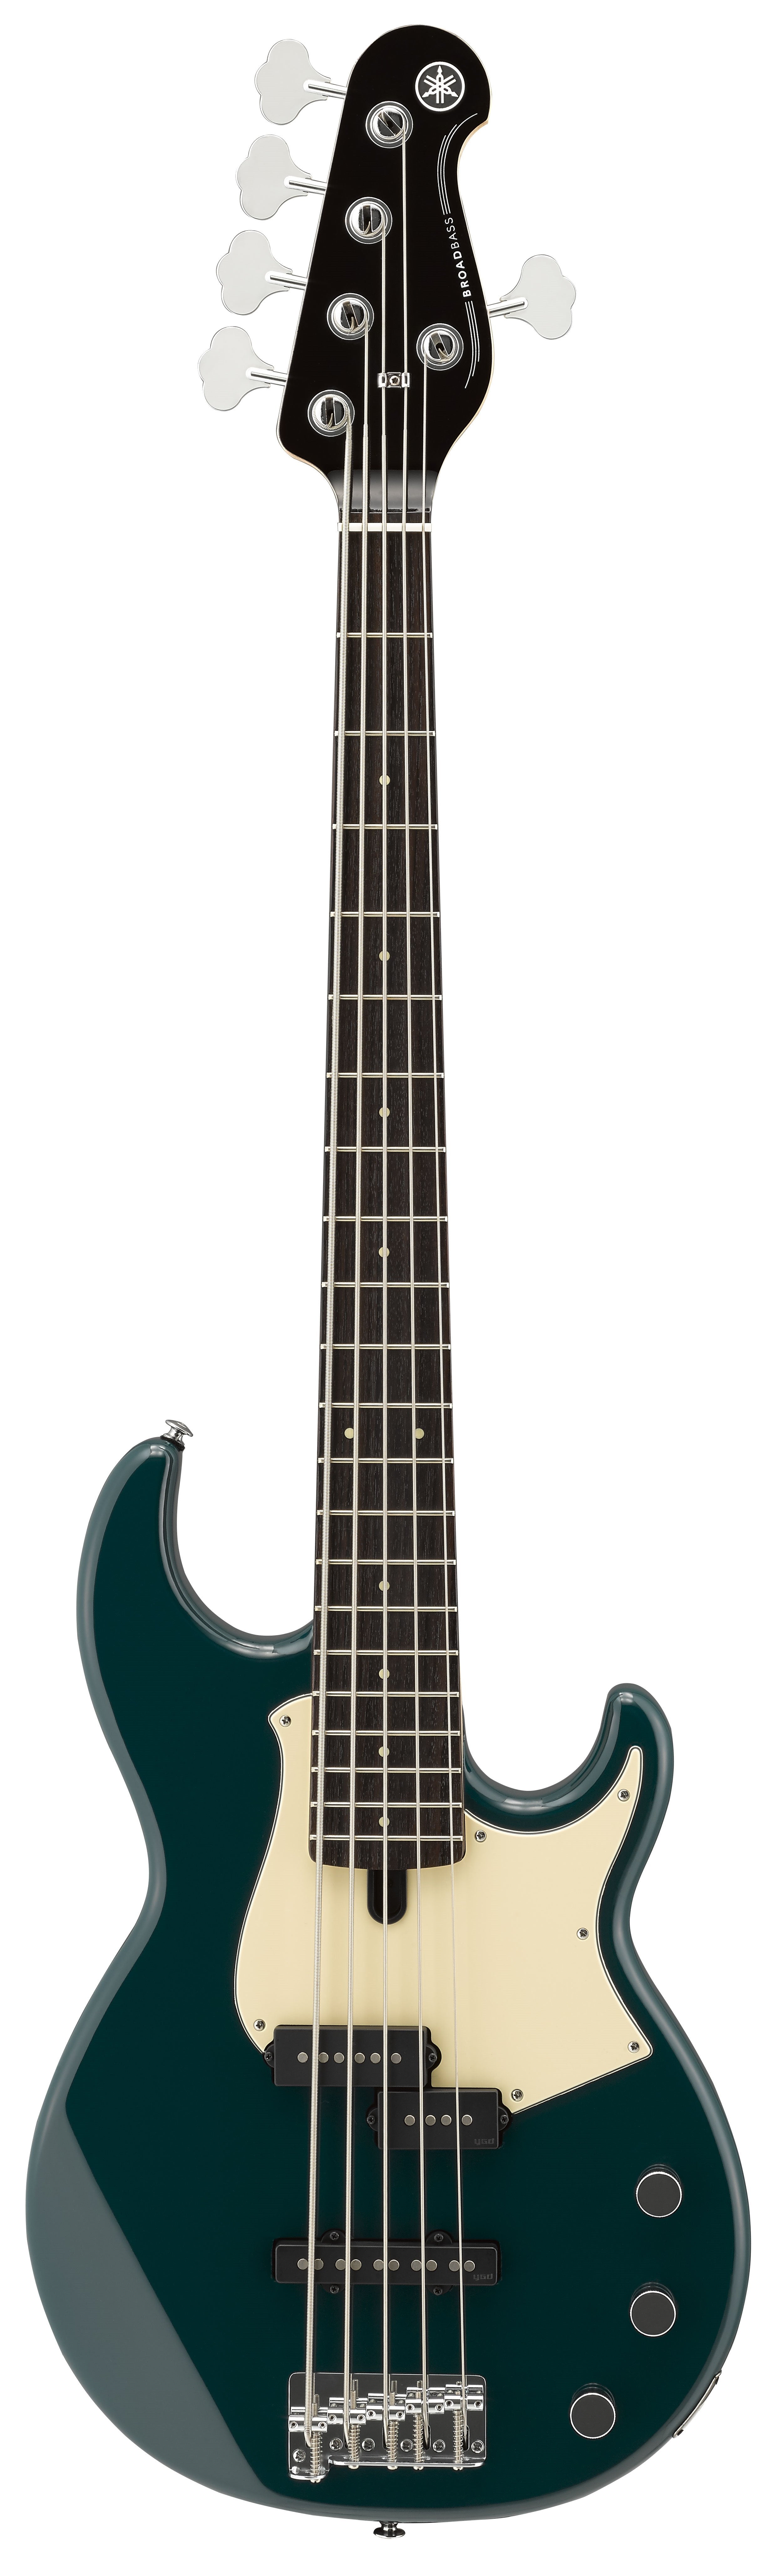 Yamaha BB435 Bass Guitar - Teal Blue